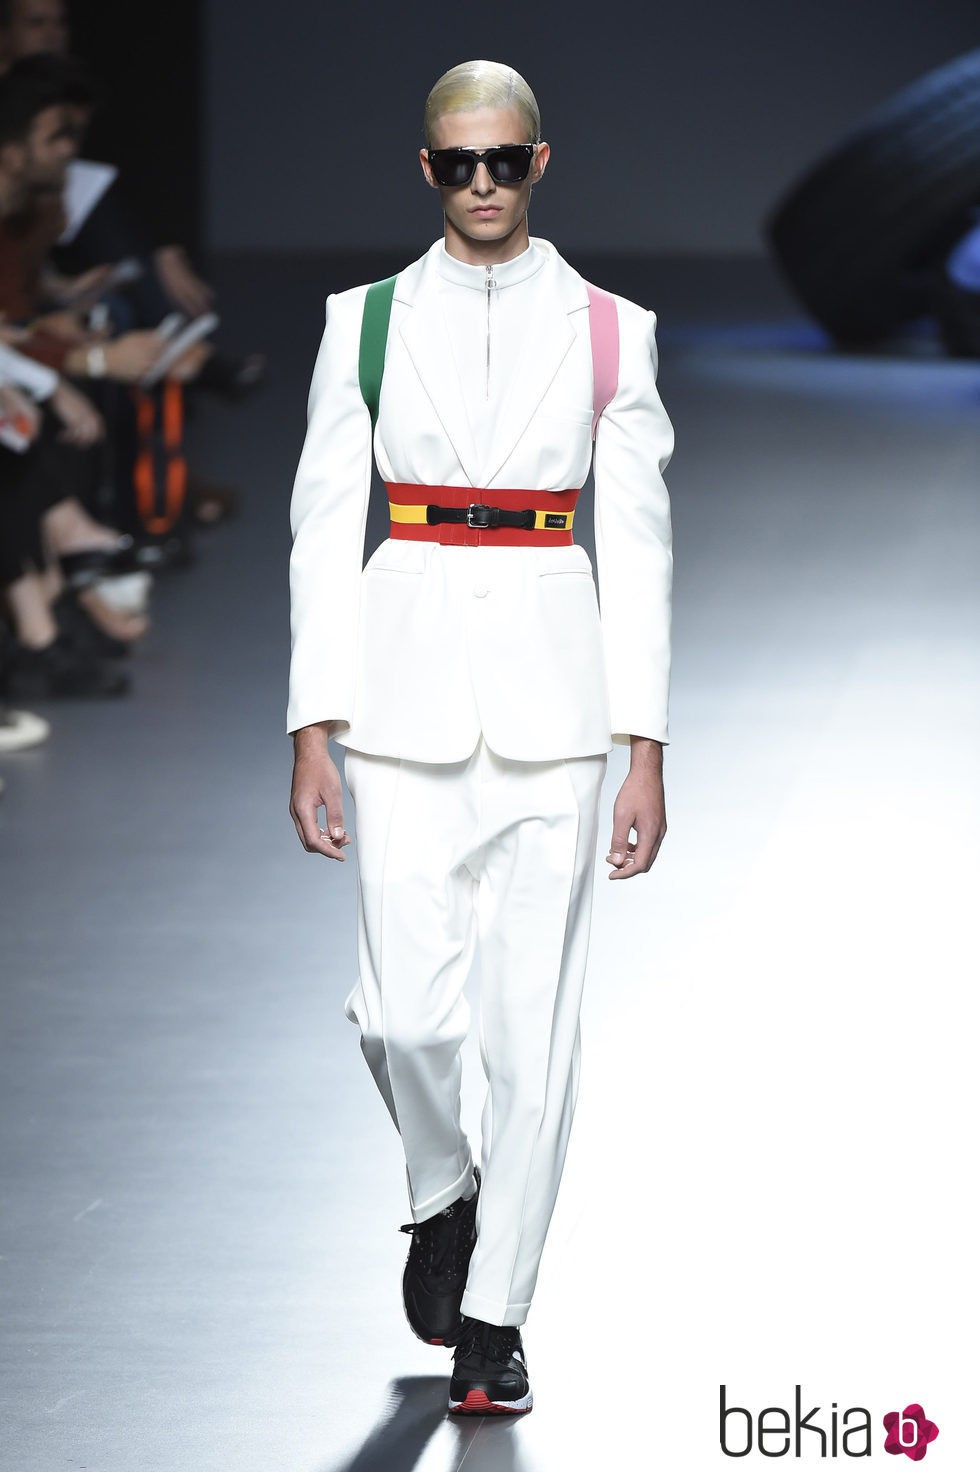 Traje de chaqueta blanco de la colección de primavera/verano 2016 de David Delfin en Madrid Fashion Week